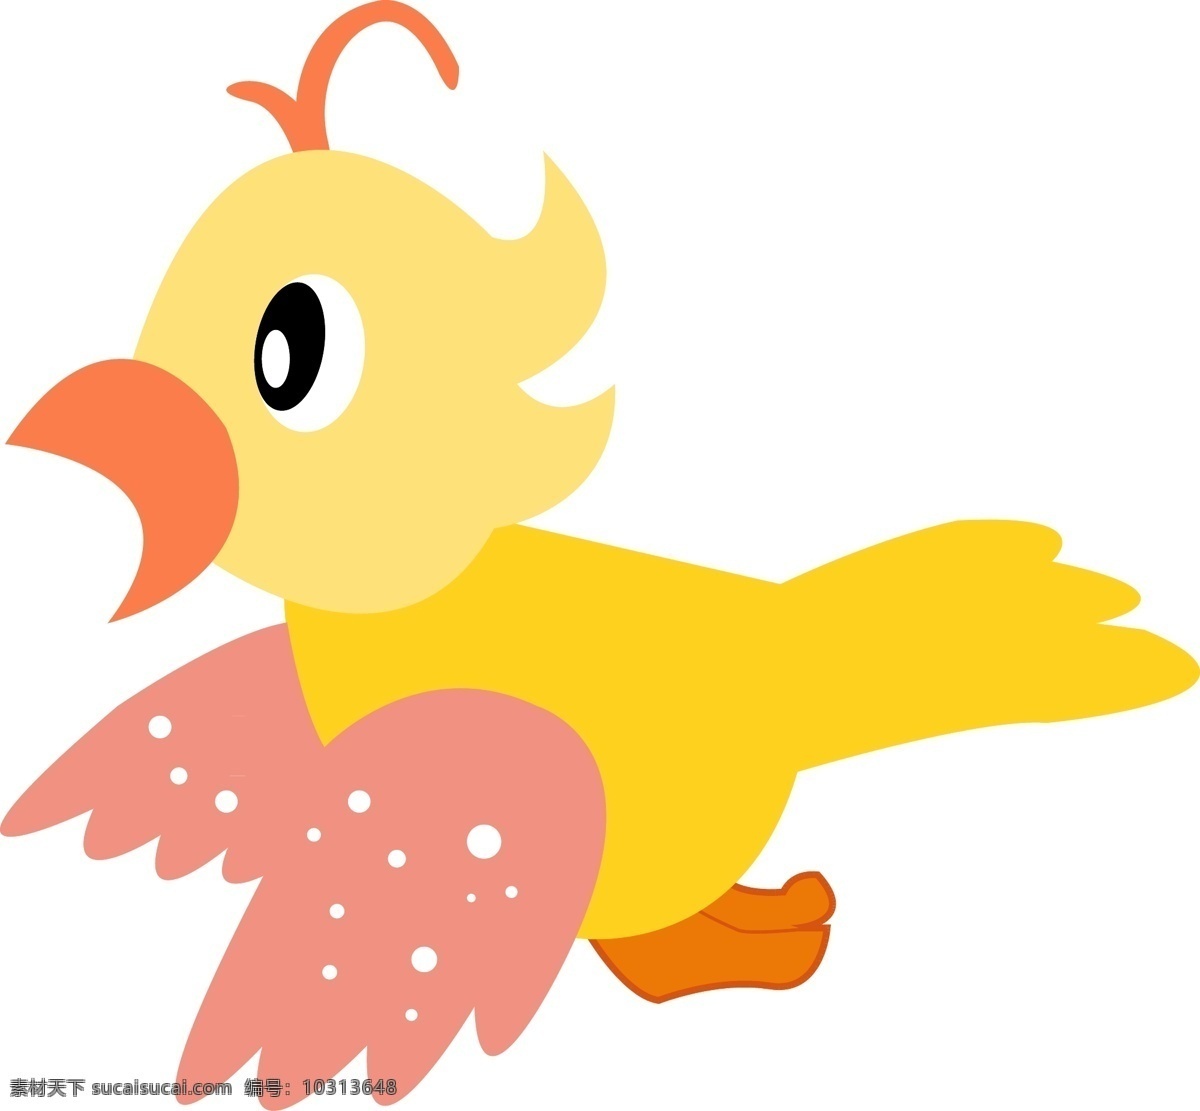 可爱 卡通 小鸟 免 抠 卡通的小鸟 可爱的小鸟 黄色 粉色 简约的图形 简笔的小鸟 简单的小鸟